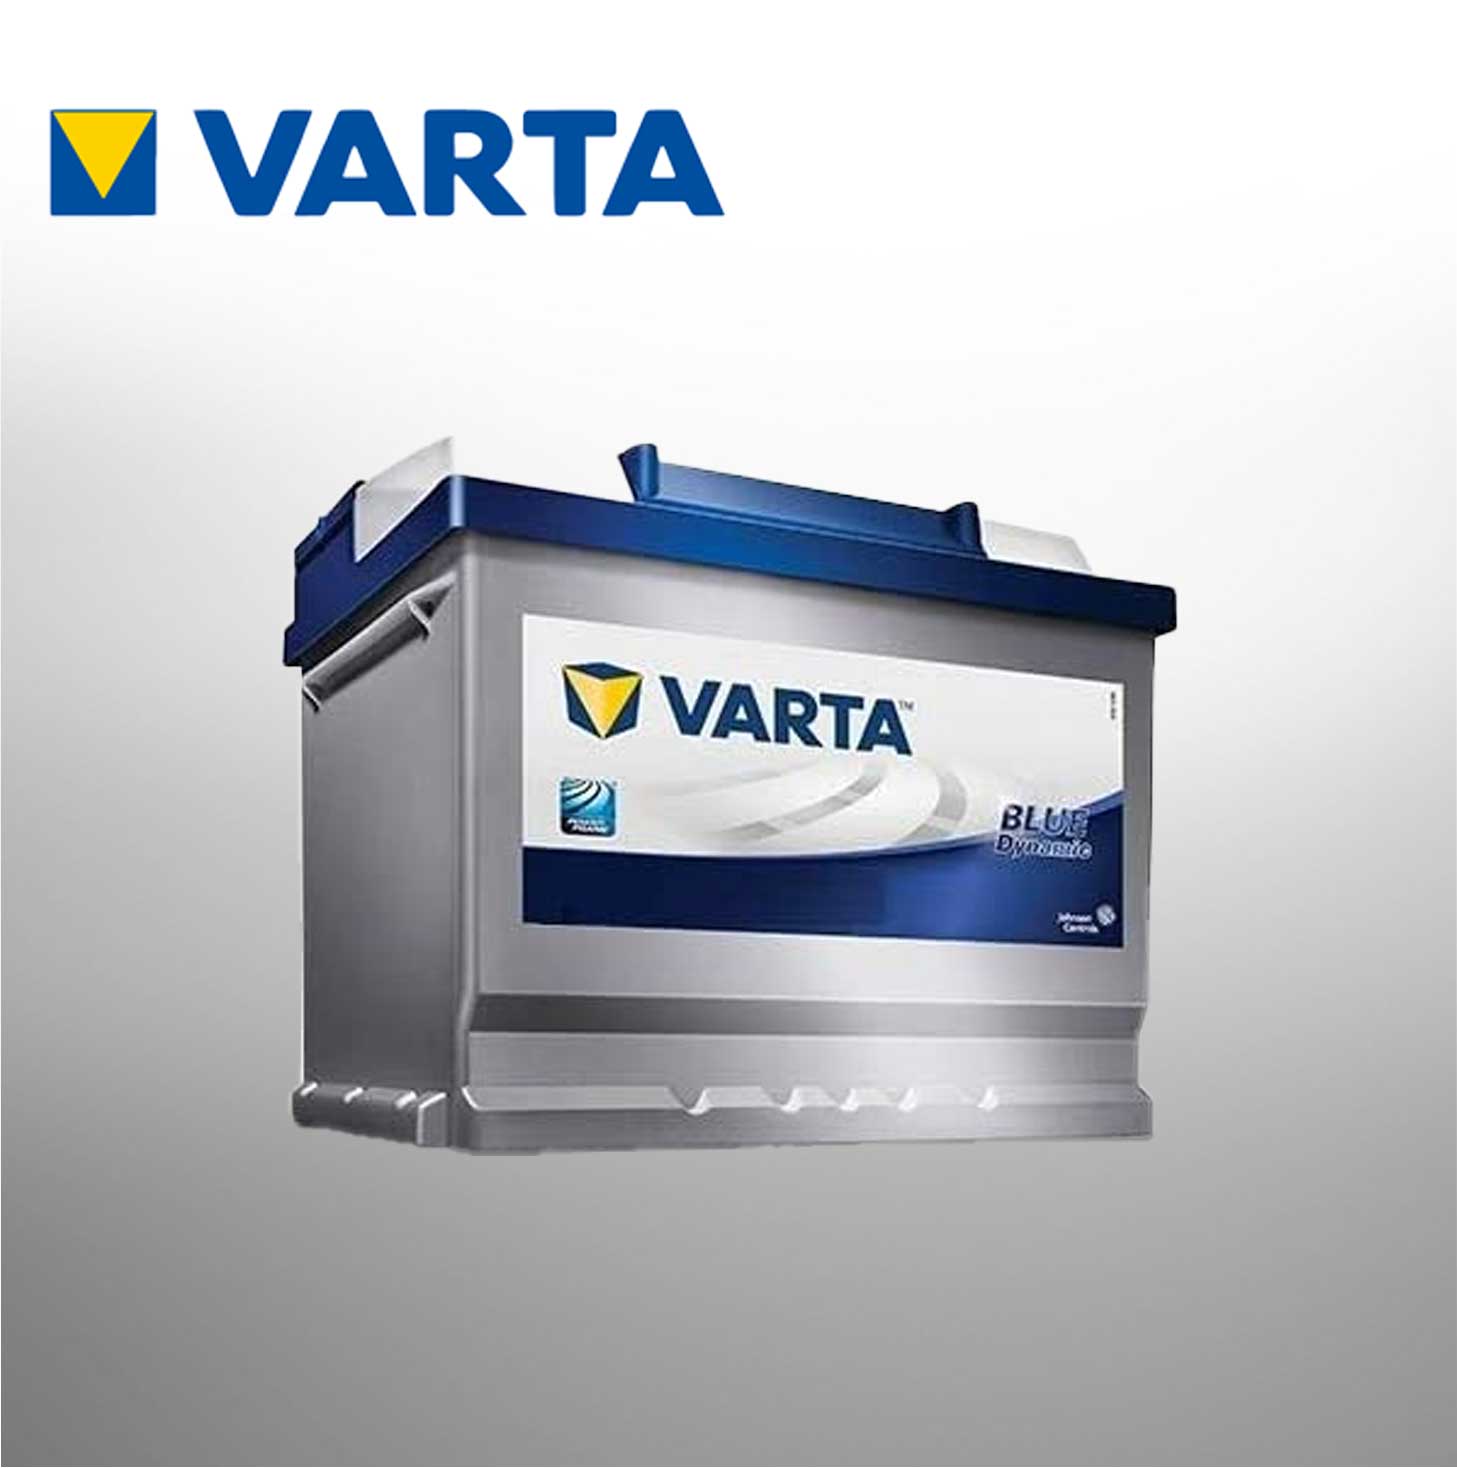 VARTA BATTERY 55AH VB555059 / 55559 VRT55AH